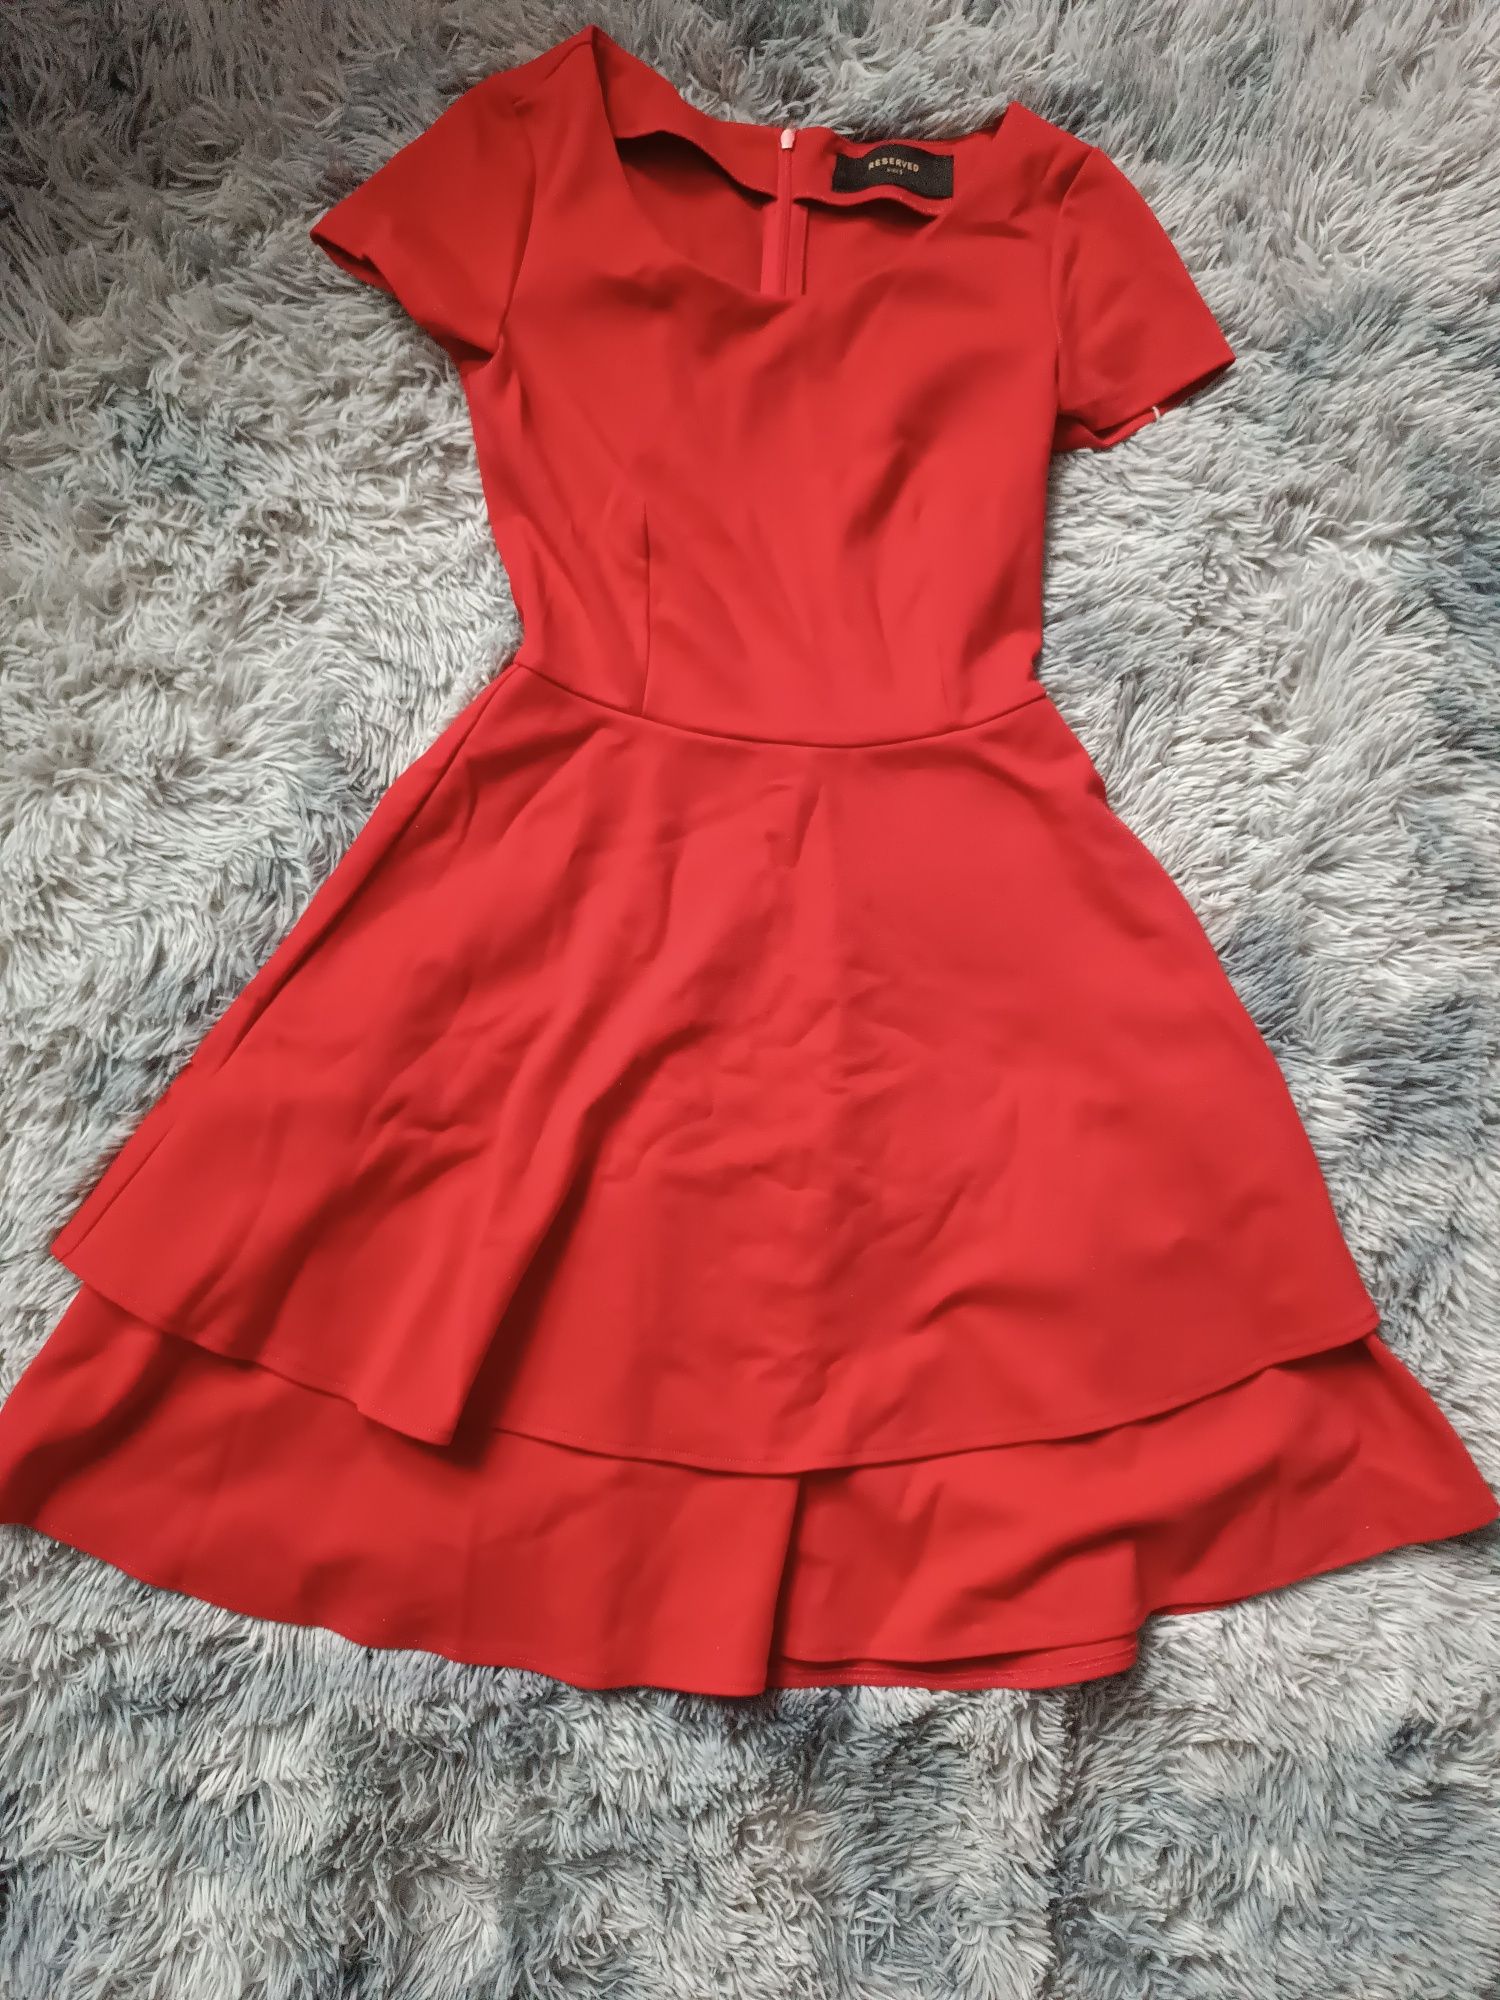 Sprzedam czerwoną sukienkę